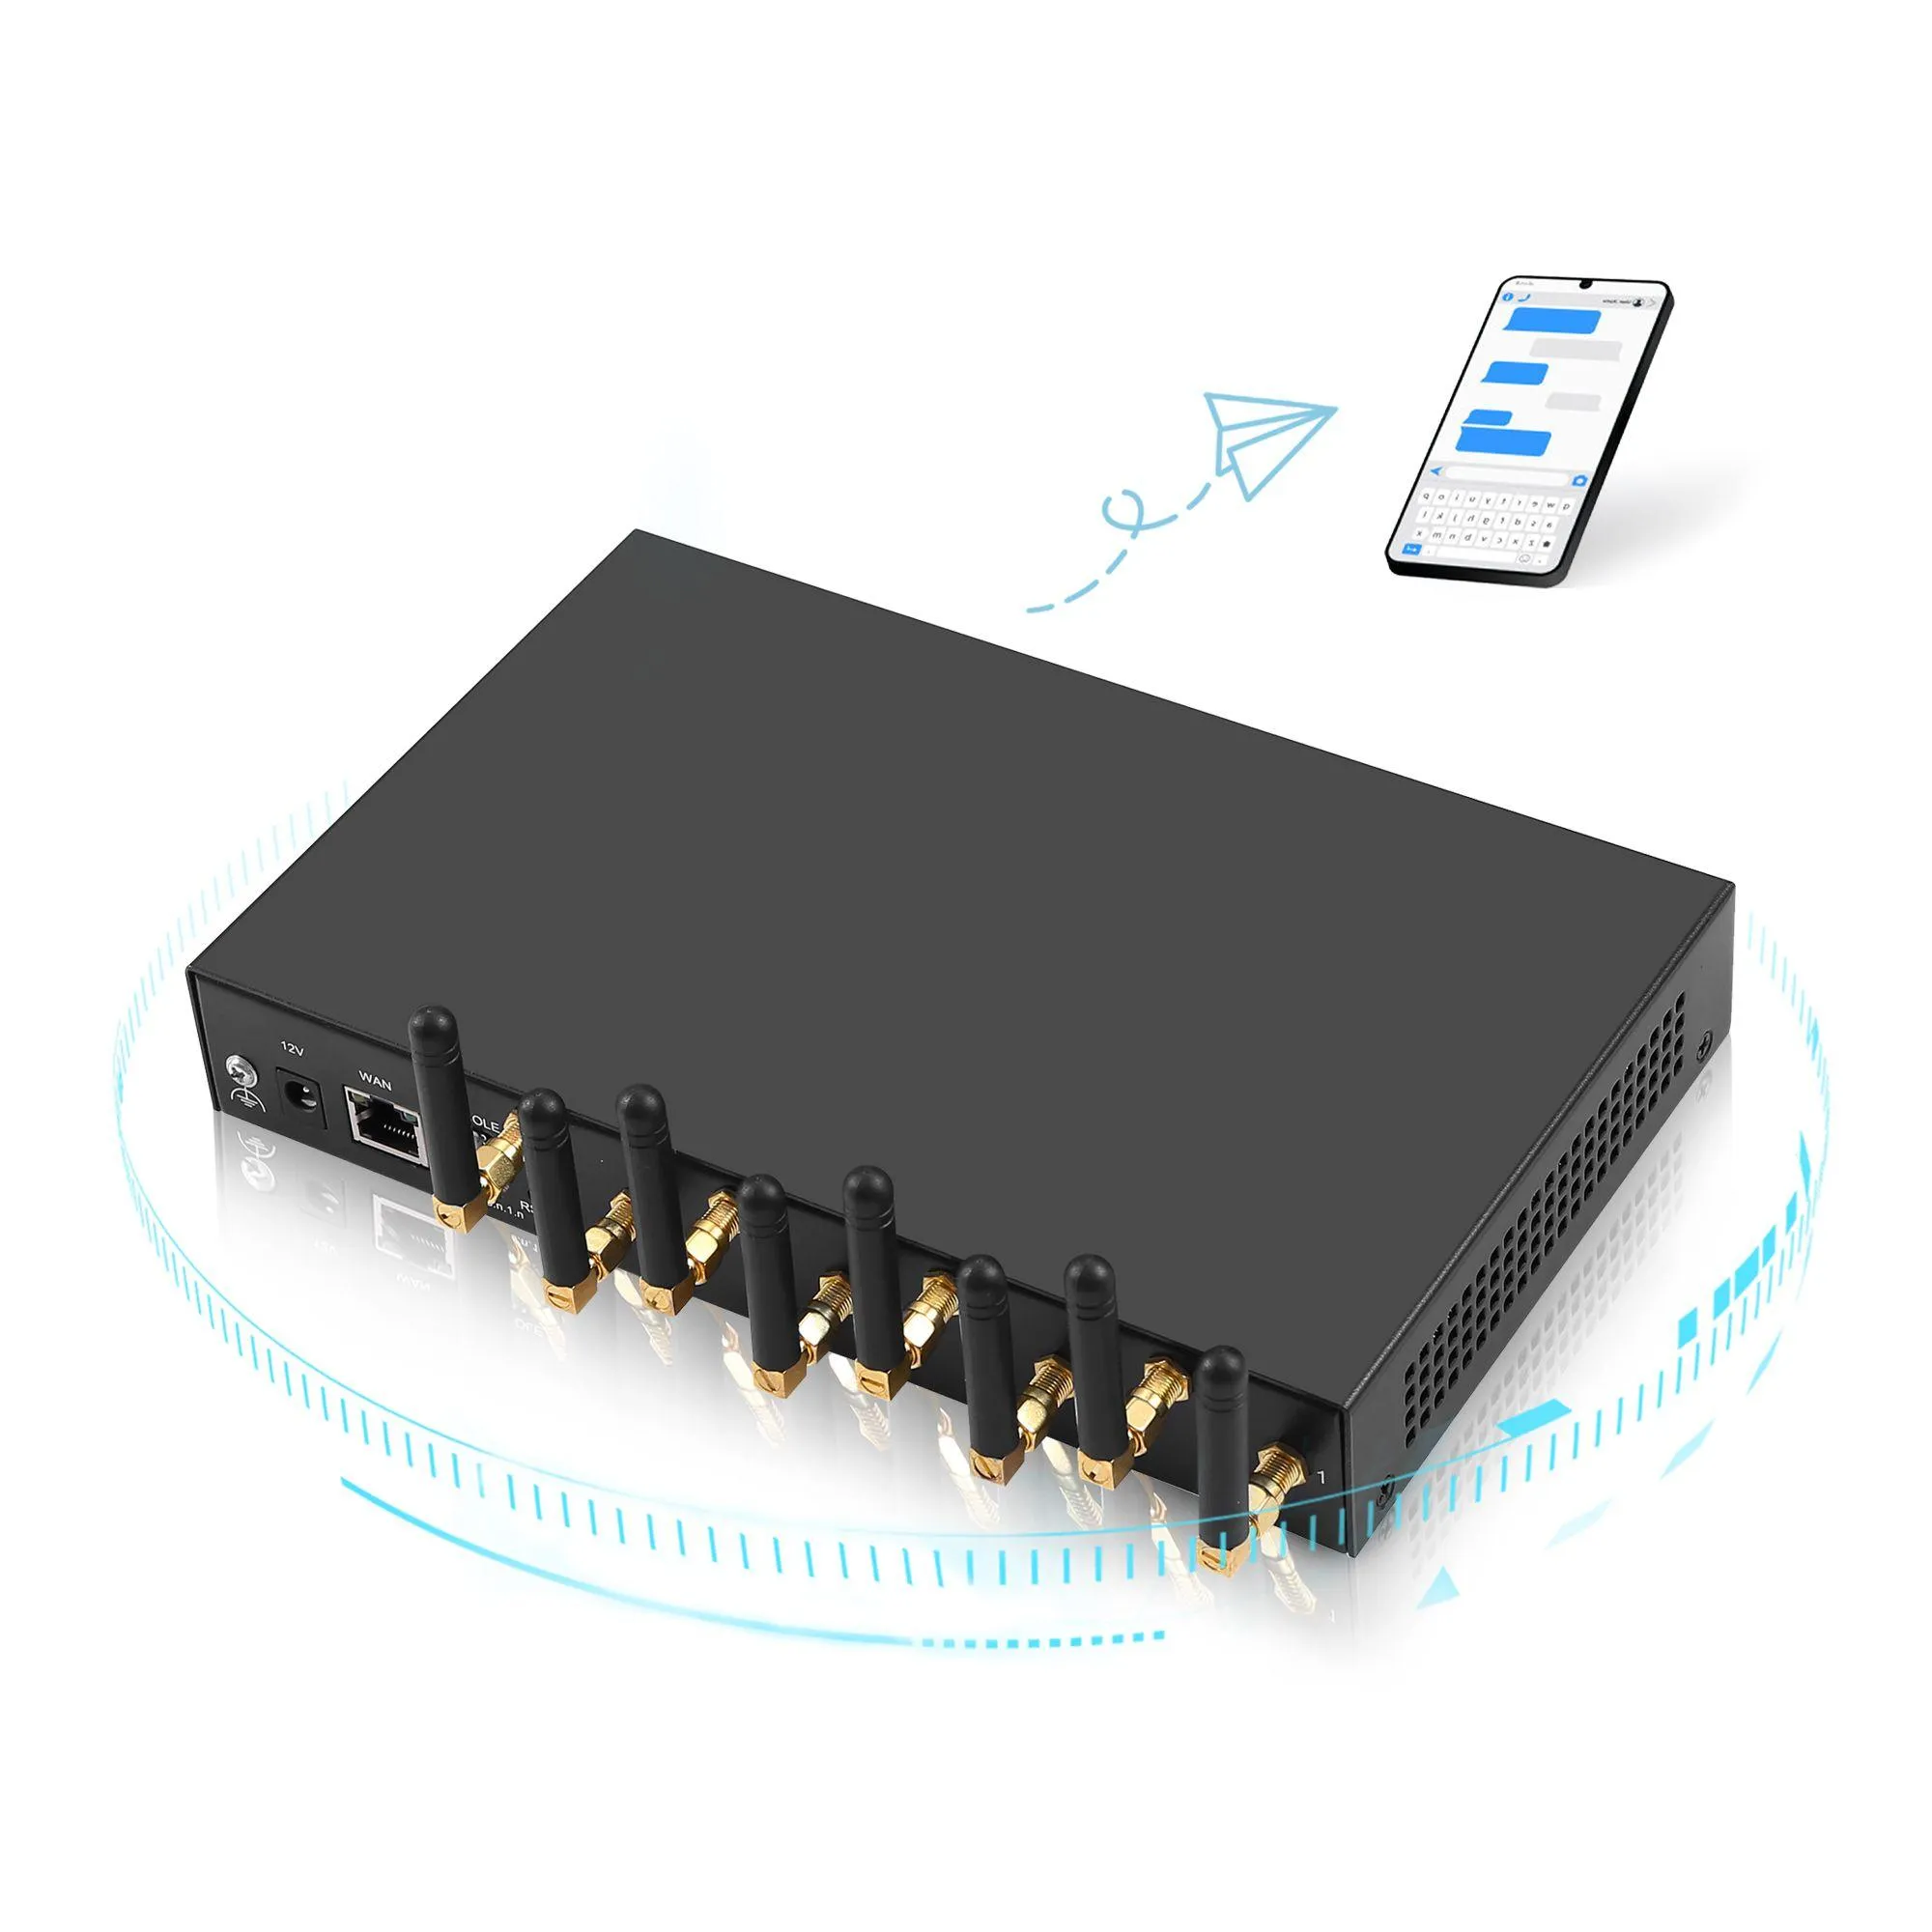 Modemler 4G LTE 8 Anten Kanalı Yüksek Kazanç Sinyal Kablosuz Modem Desteği SMPP HTTP API Veri Analizi ve SMS Bildirim Sistemi Drop D OTELE